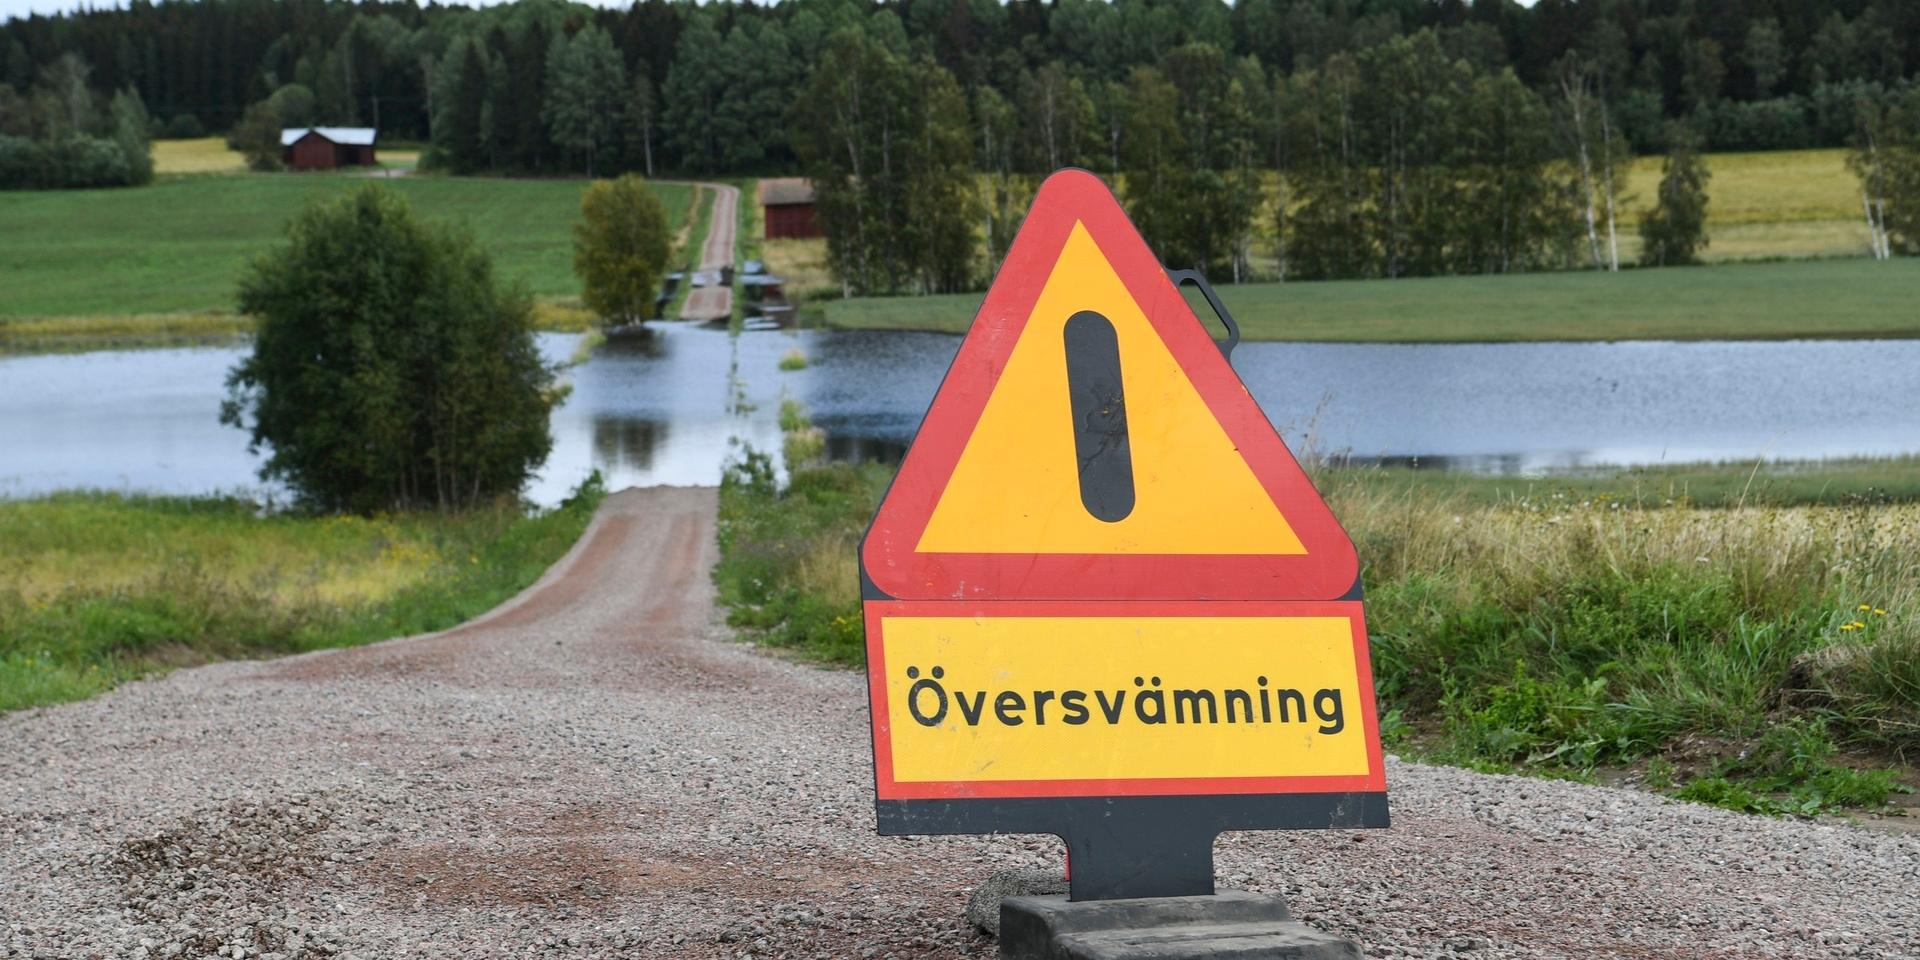 TORSÅKER  20210818
Översvämning i Bodås, utanför Torsåker på torsdagen. Det kraftiga regnet har avtagit och läget har stabiliserats något, men förödelsen efter de skyfall som drabbat bland annat Gävle är stor.
Foto: Fredrik Sandberg / TT kod 10080